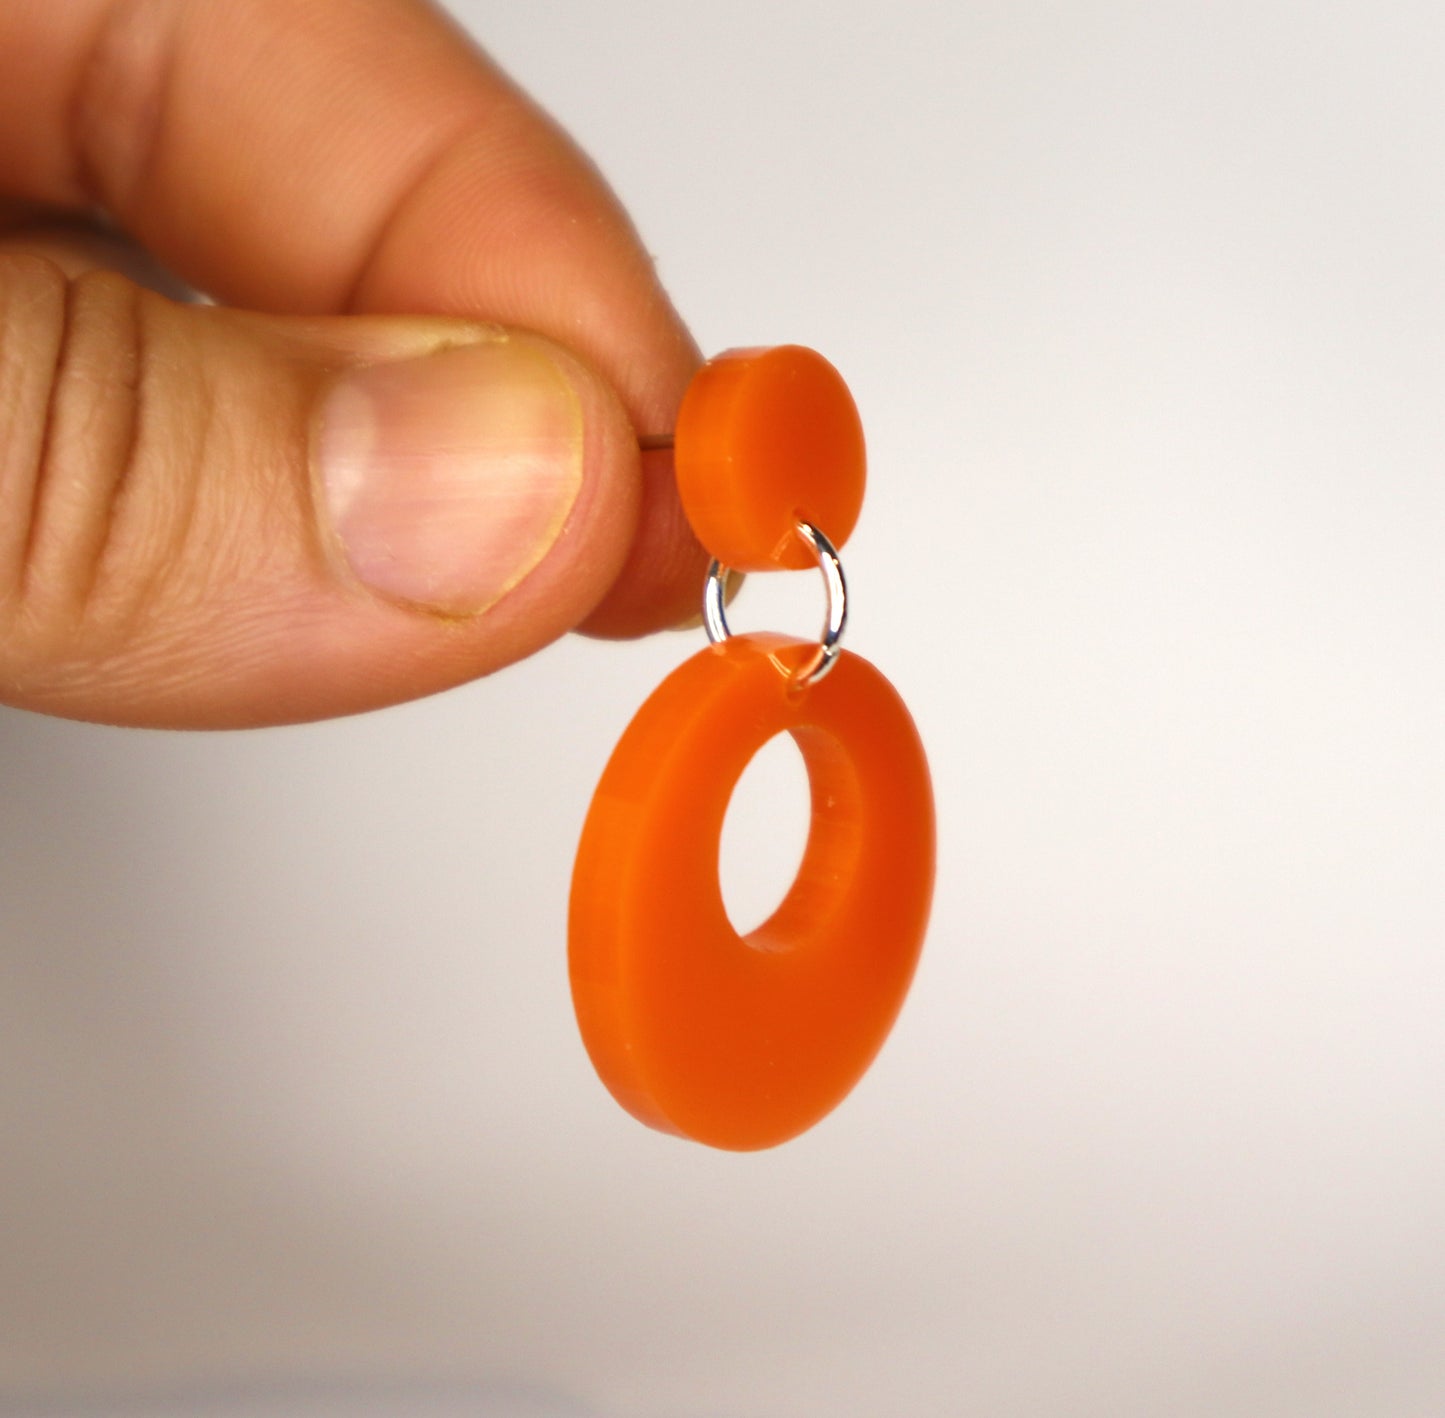 Retro Mod Earrings - laser cut acrylic - orange